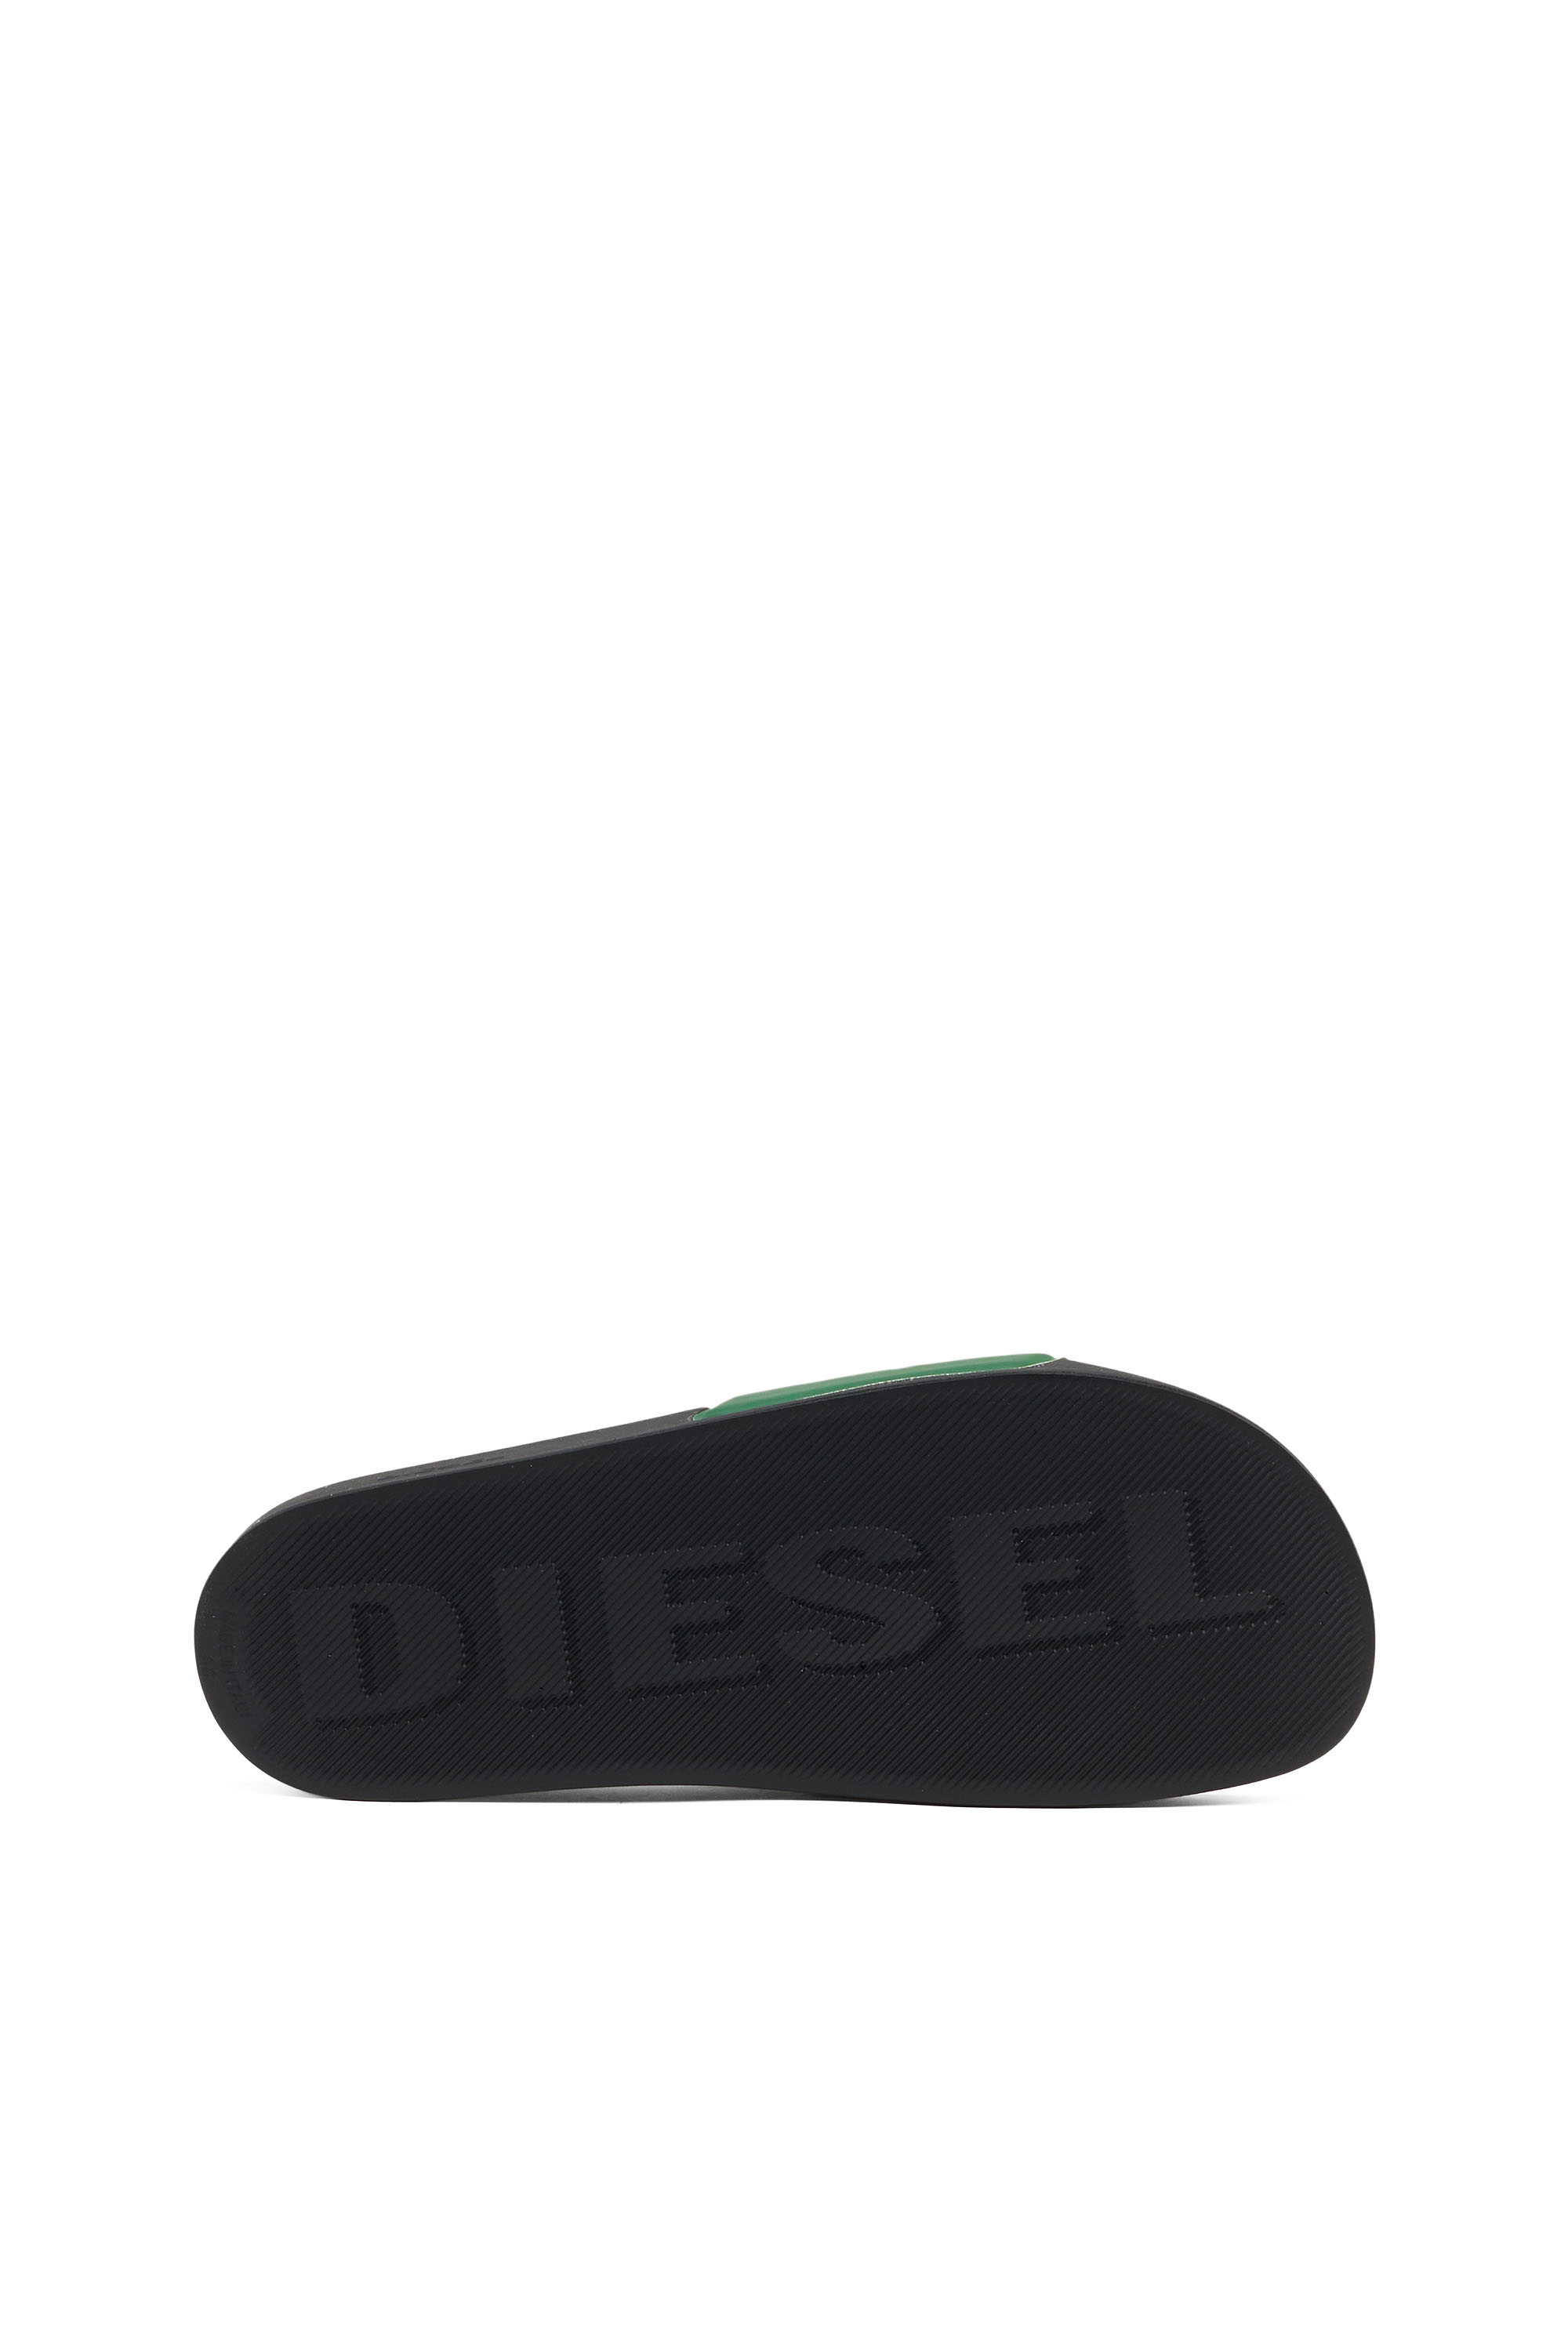 Diesel - SA-MAYEMI D, Green - Image 4